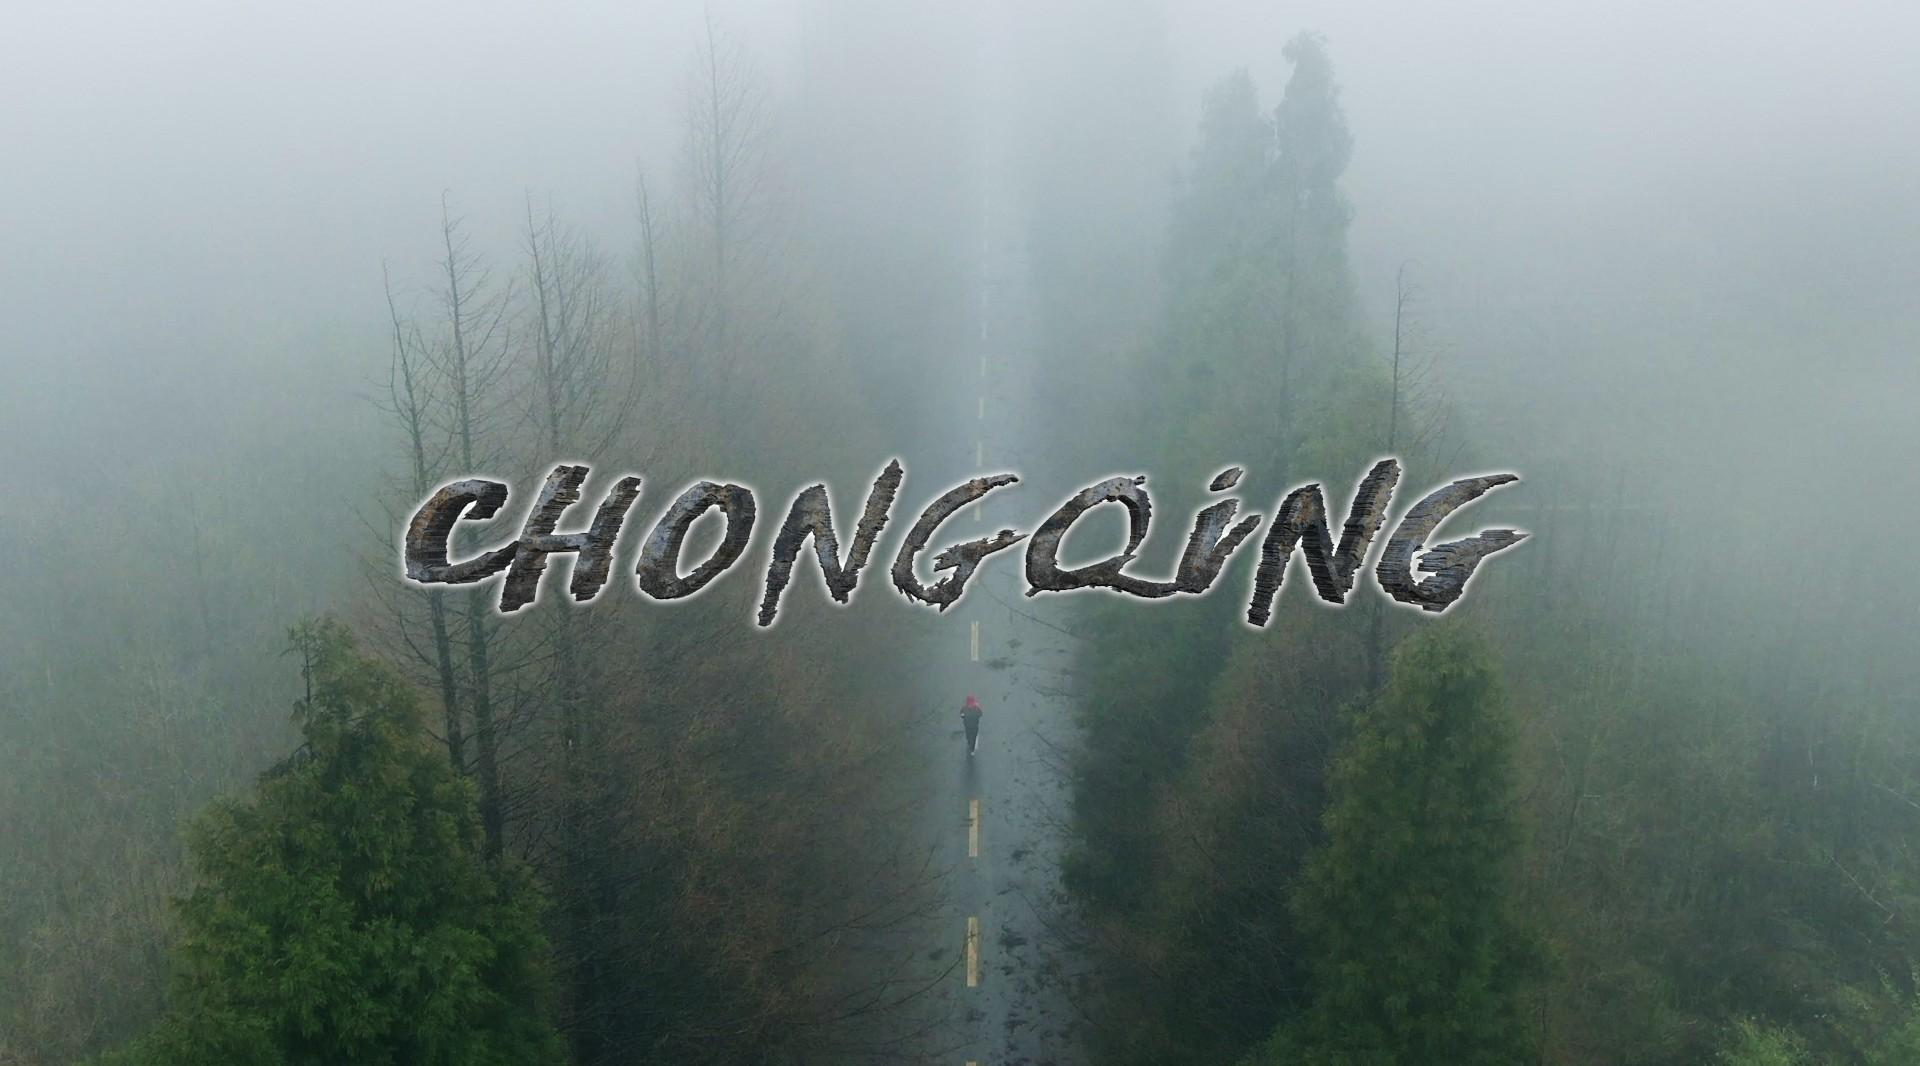 行走重庆丨带你打卡重庆各个网红景点Walking in Chongqing